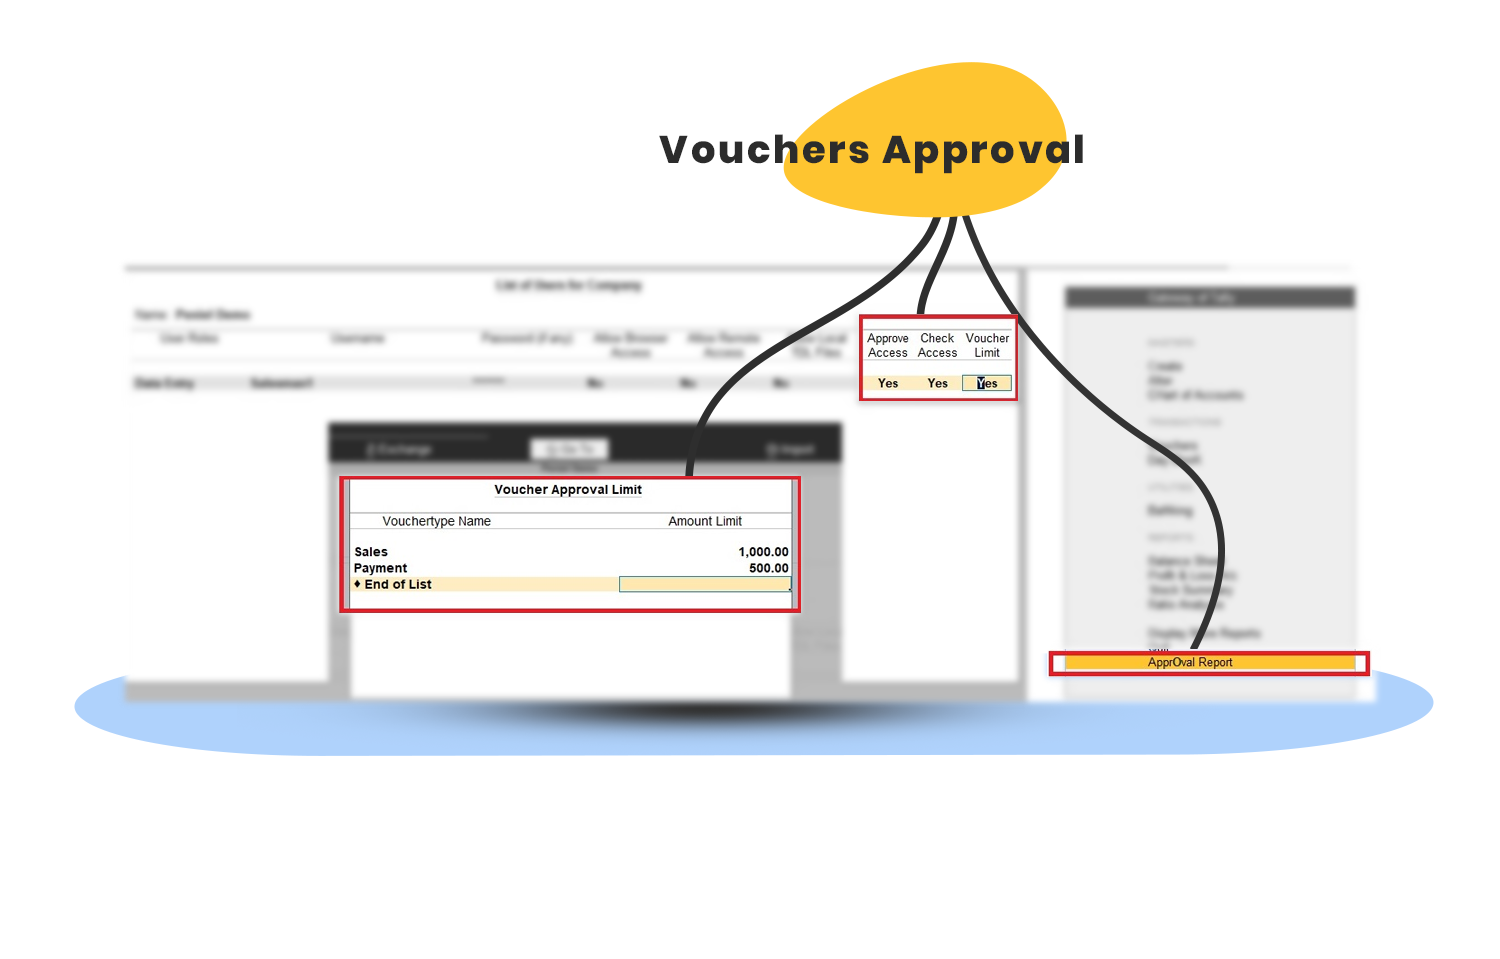 Voucher Approval tally customization